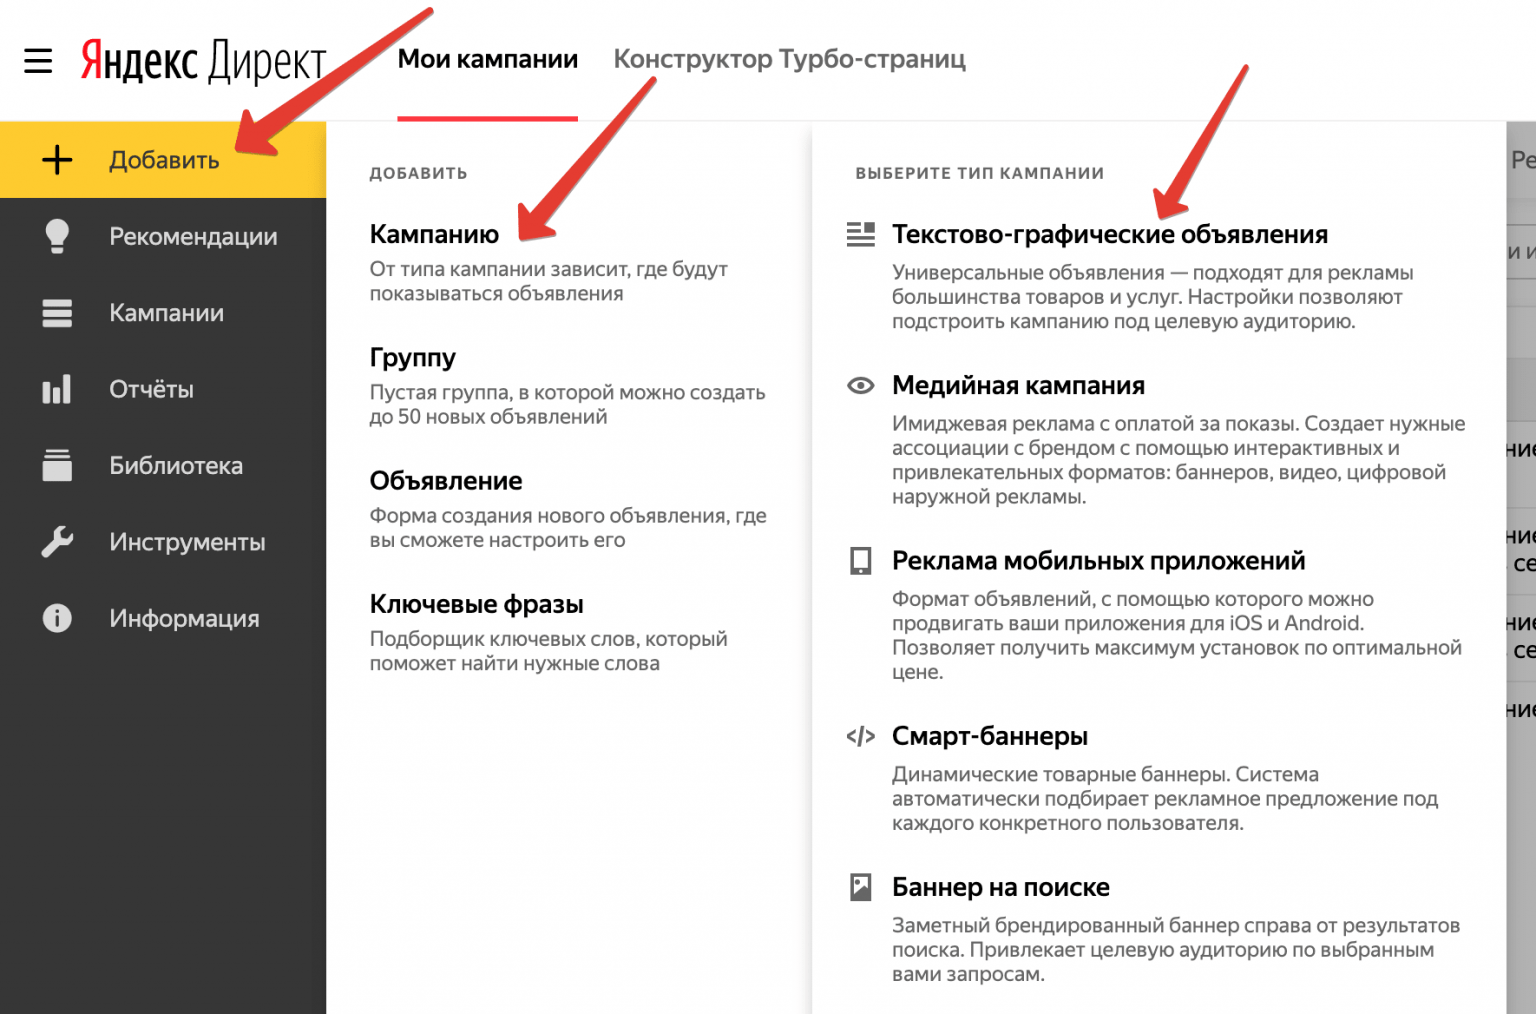 Яндекс директ объявления